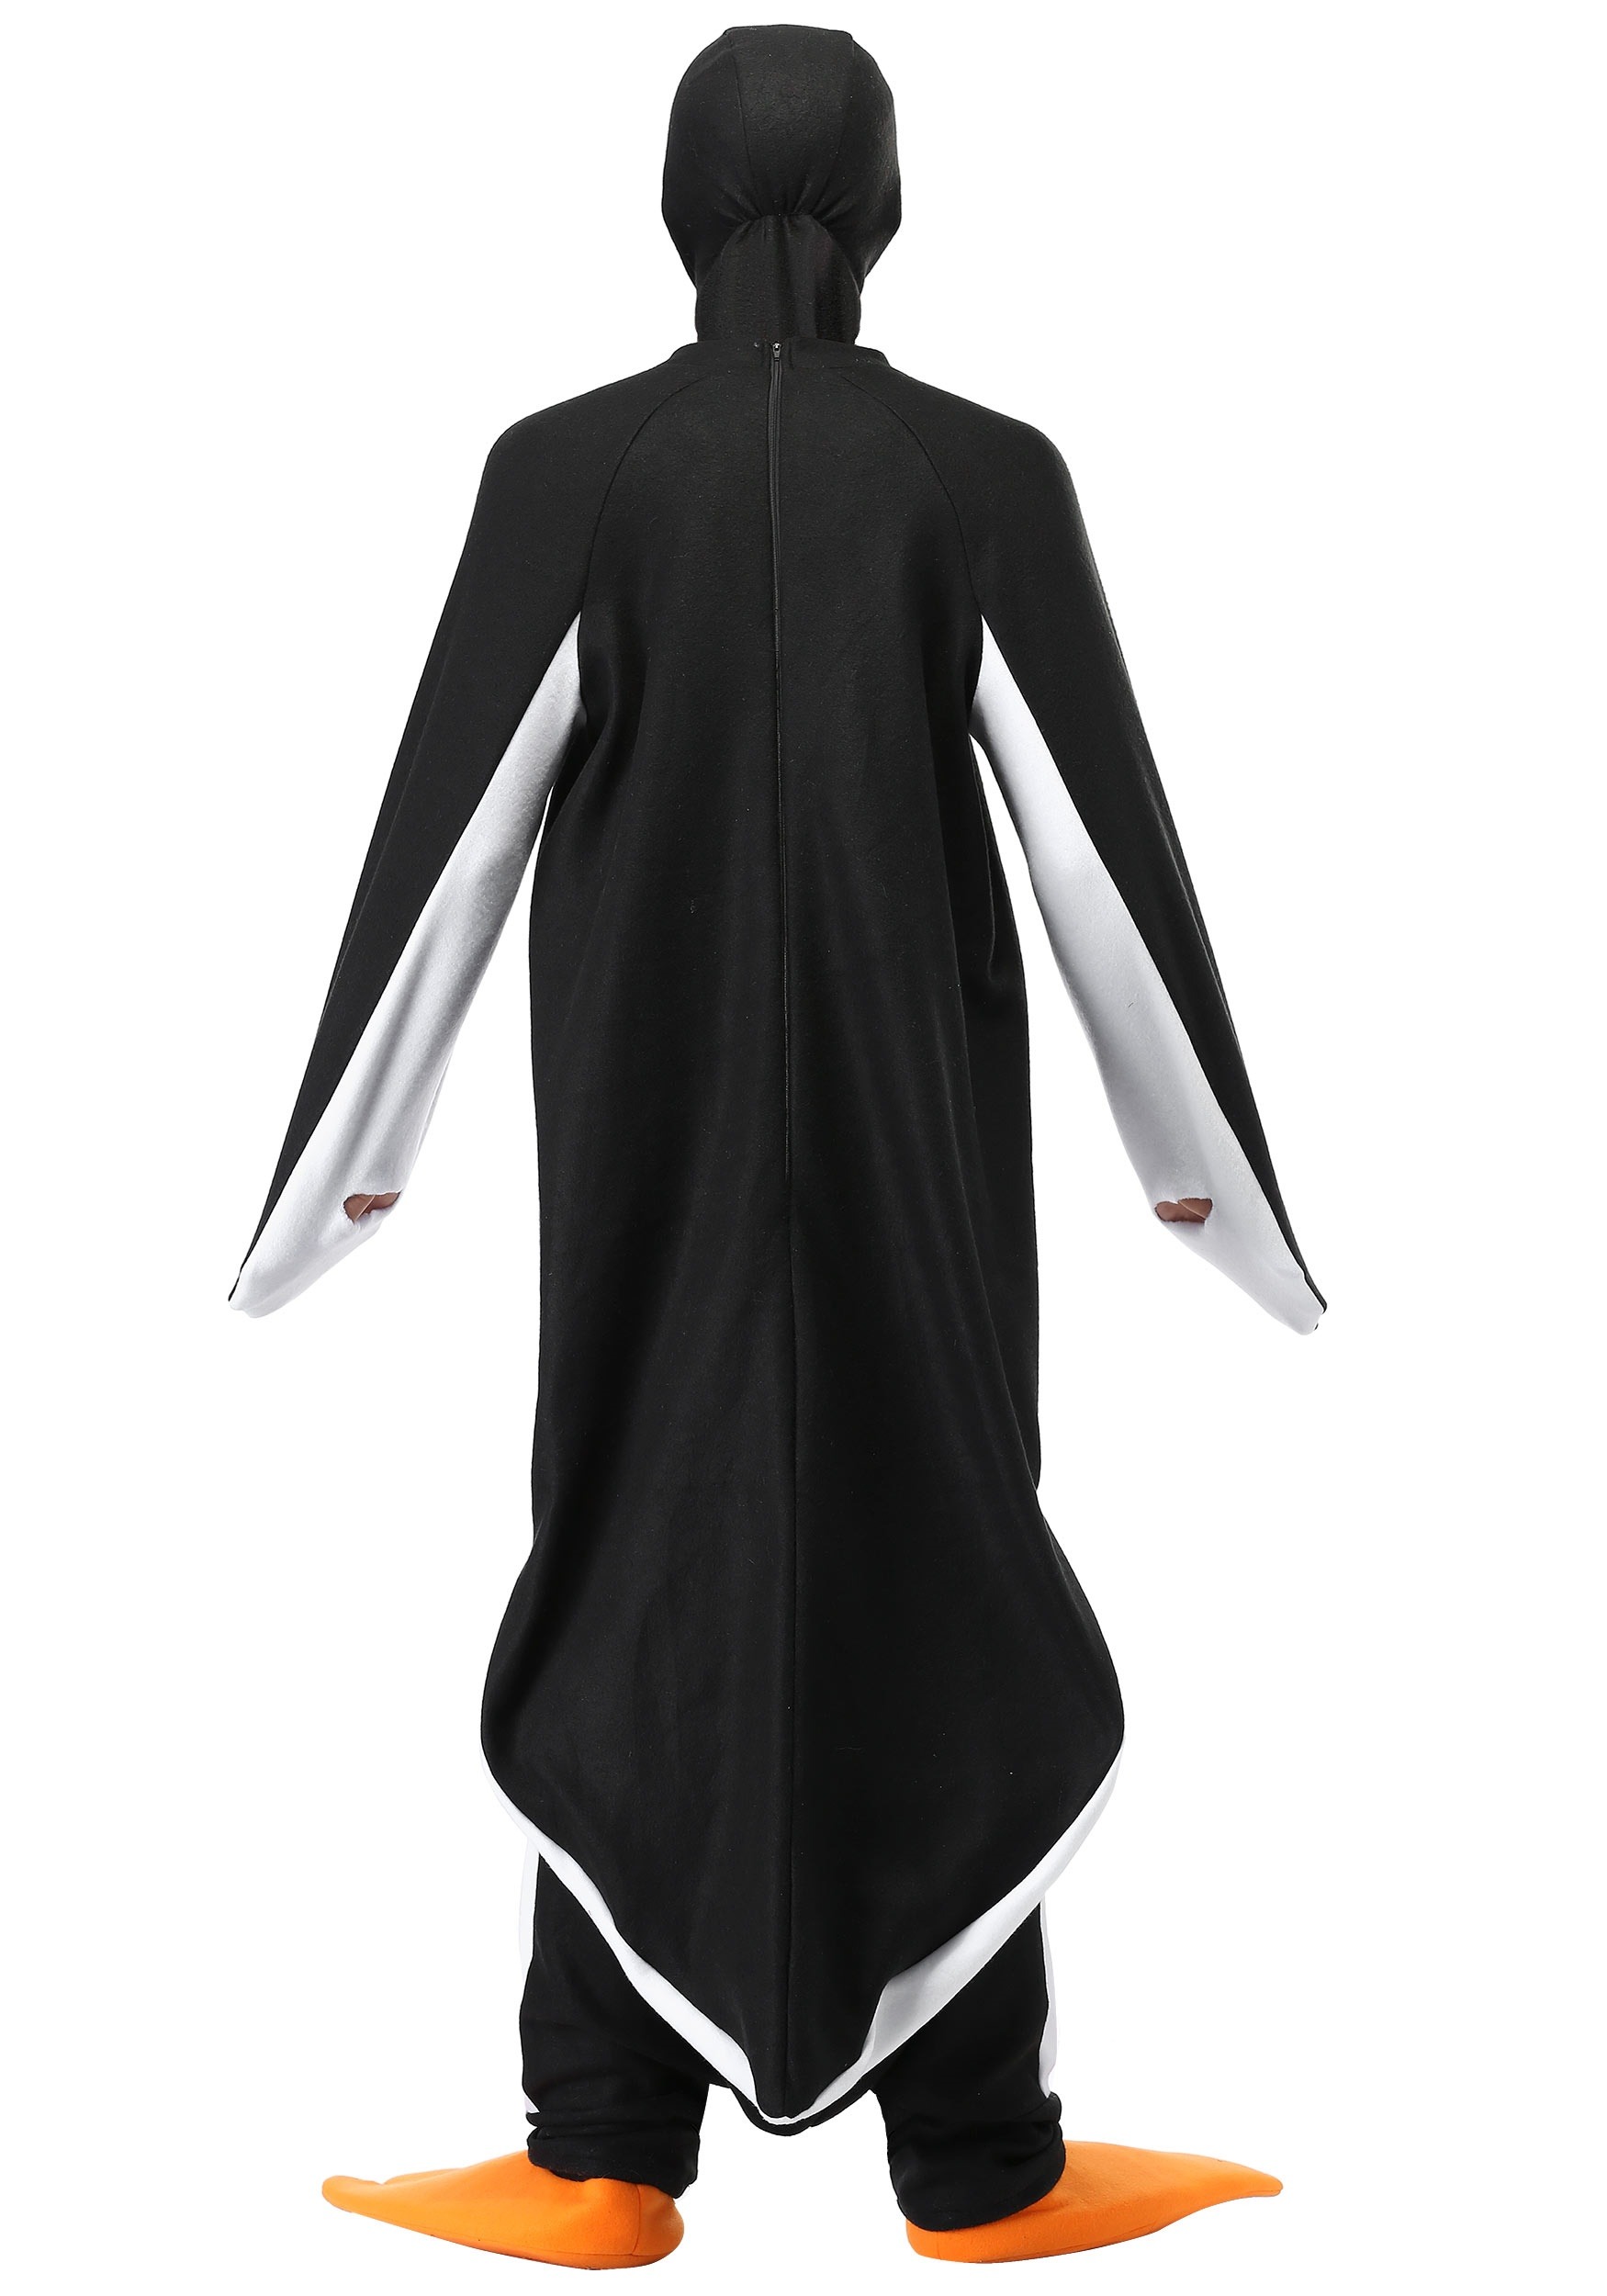 Penguin Plus Size Costume